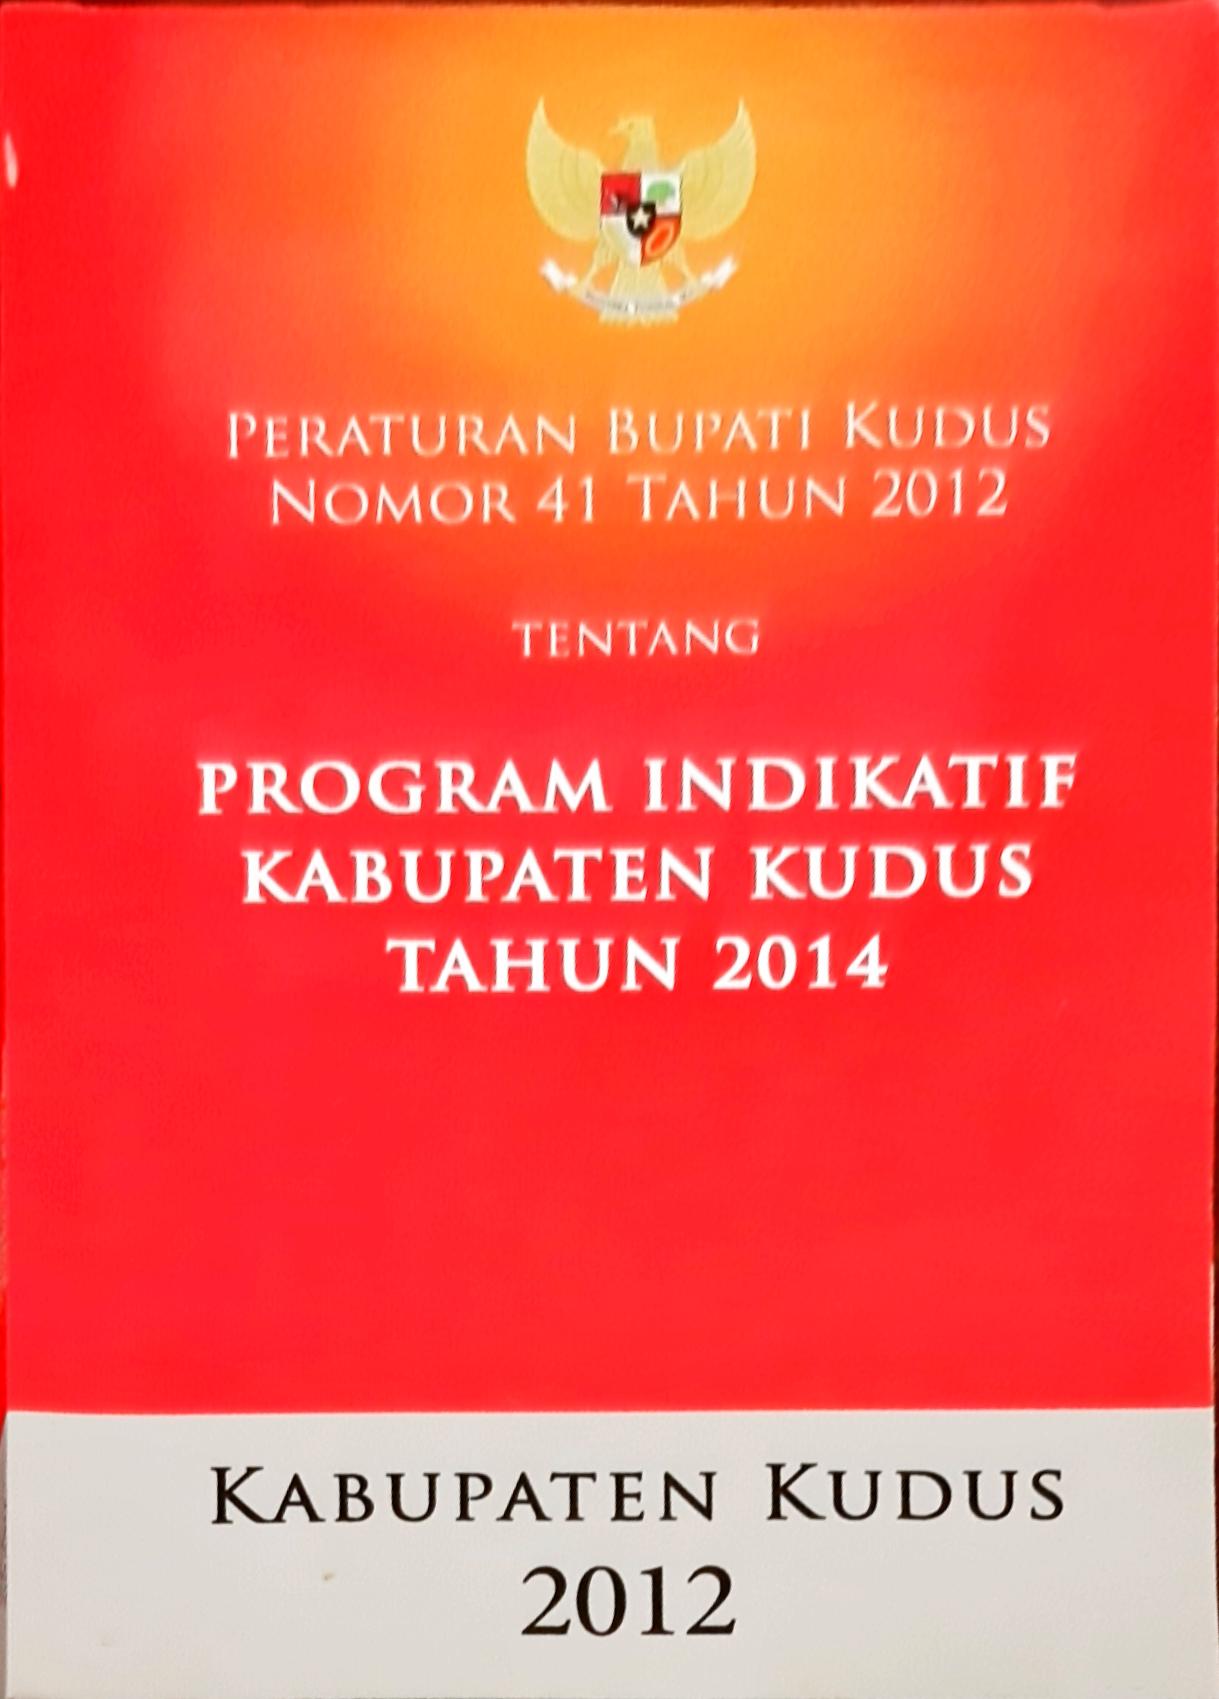 Peraturan Bupati Kudus Nomor 41 Tahun 2012 Tentang Program Indikatif Kabupaten Kudus Tahun 2014